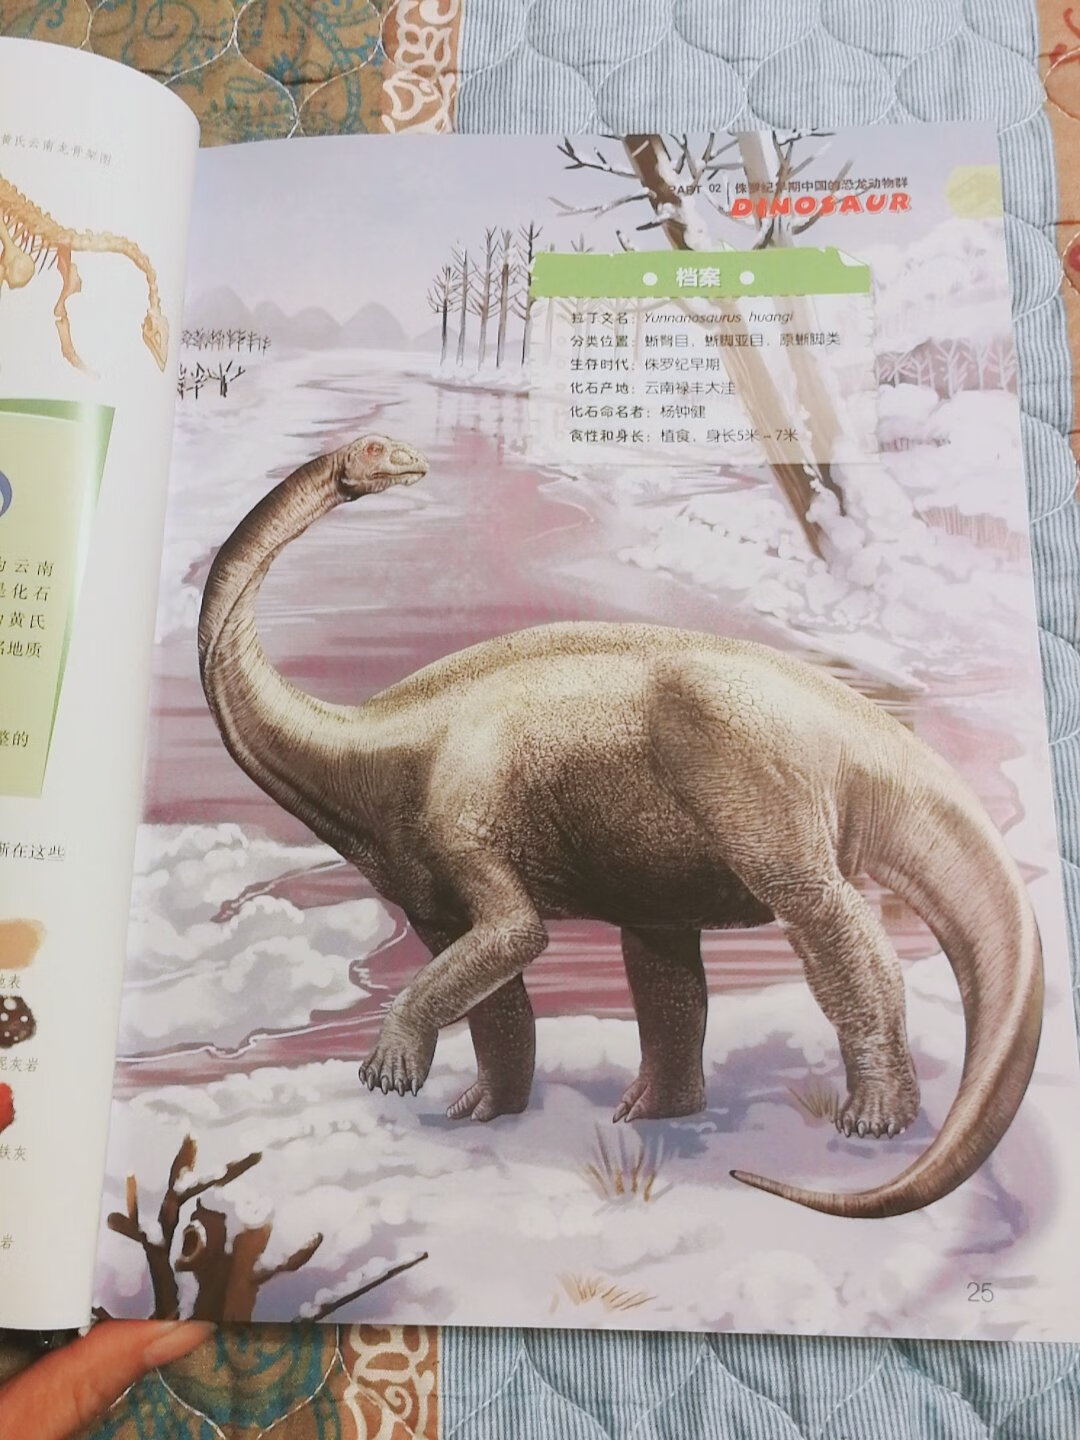 家里这么多恐龙书，头一本是专门讲中国的恐龙，我也是头一次知道，原来中国有这么多恐龙啊。我们辽宁就有恐龙博物馆，还能采集化石，可是我都没想过去看，这回跟孩子说好了，我们先研究书，等明年去采集化石去。